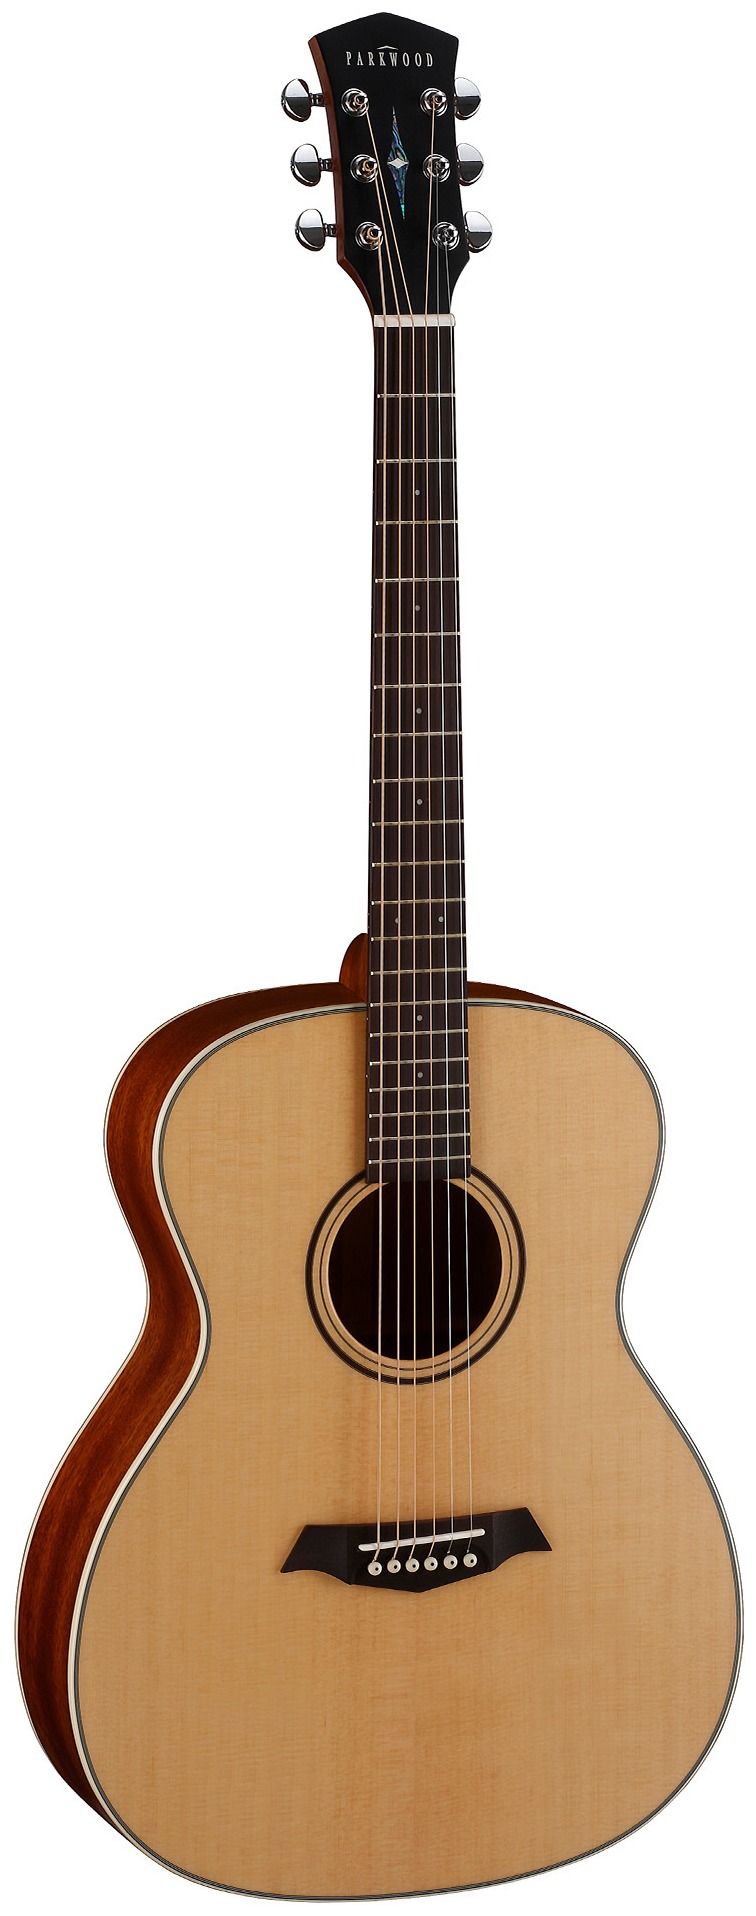 Акустические гитары Parkwood S22-GT (чехол в комплекте) акустические гитары parkwood s22m ns чехол в комплекте